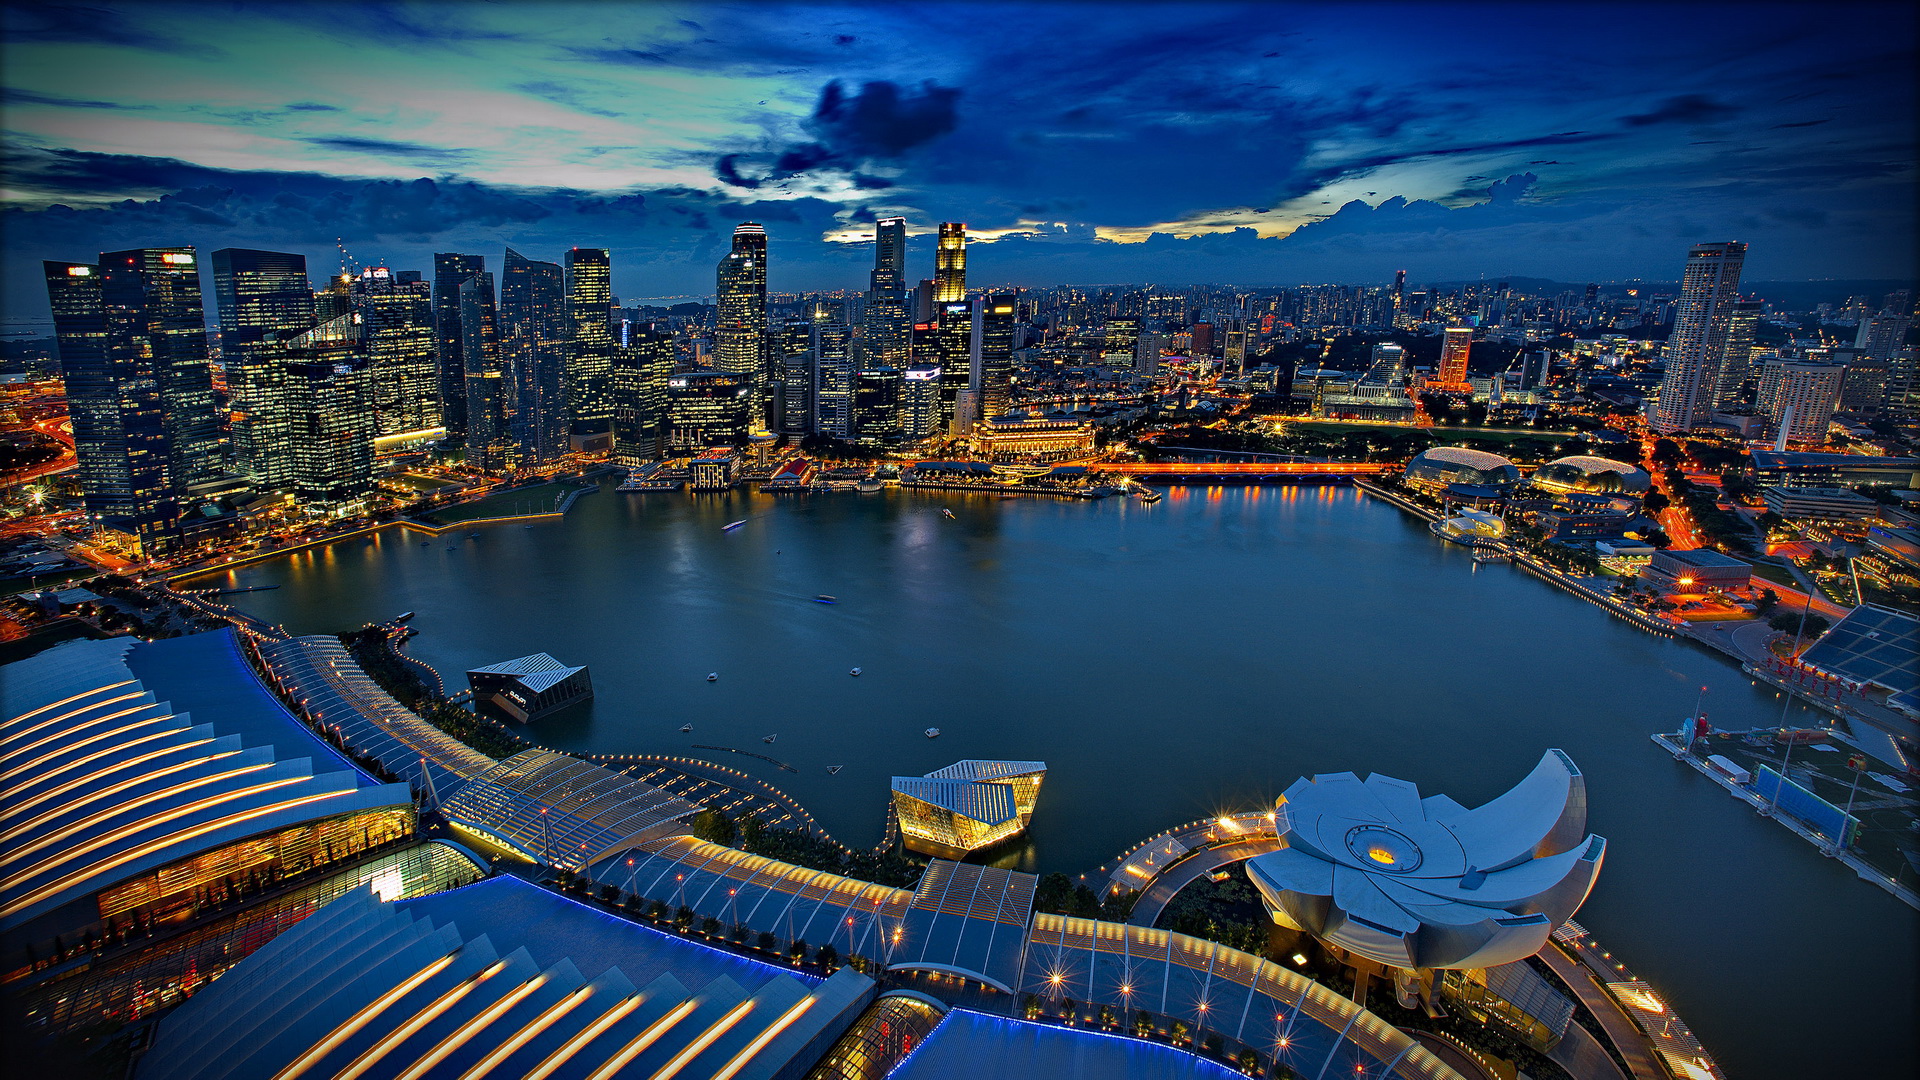 Singapore Marina Bay Sands Tower - Fondos de pantalla gratis para ...